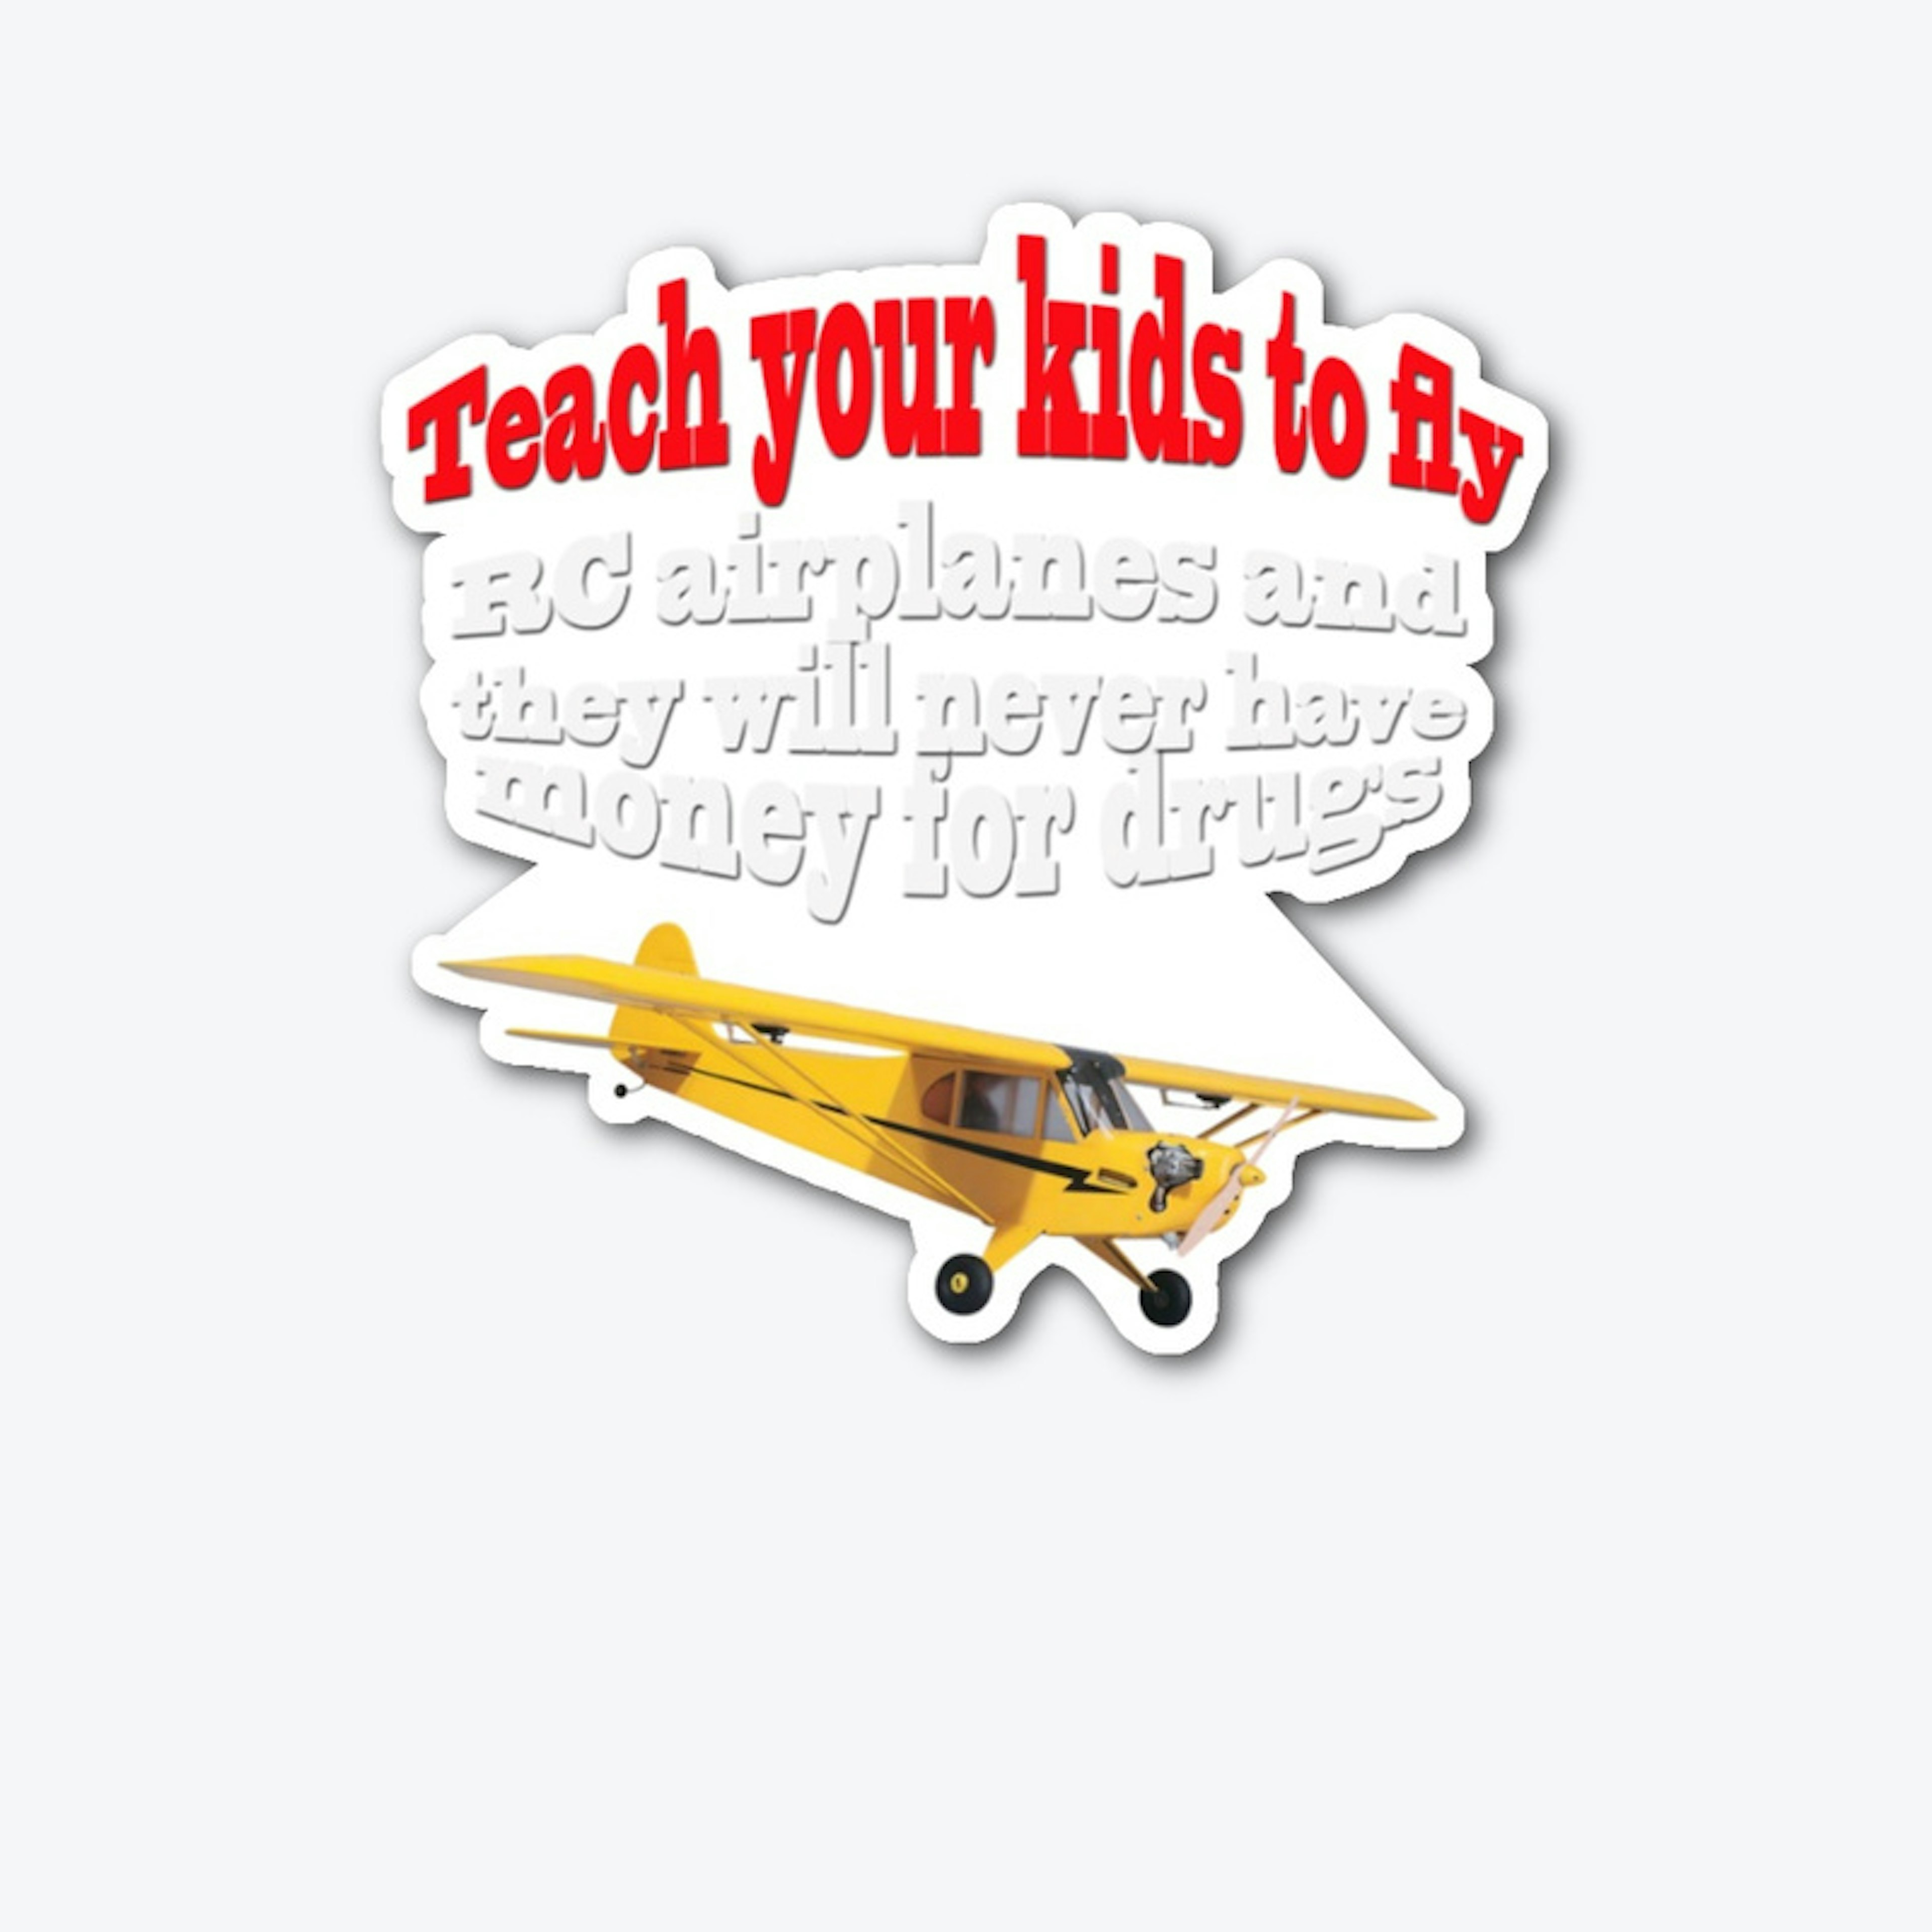 Teach RC planes 